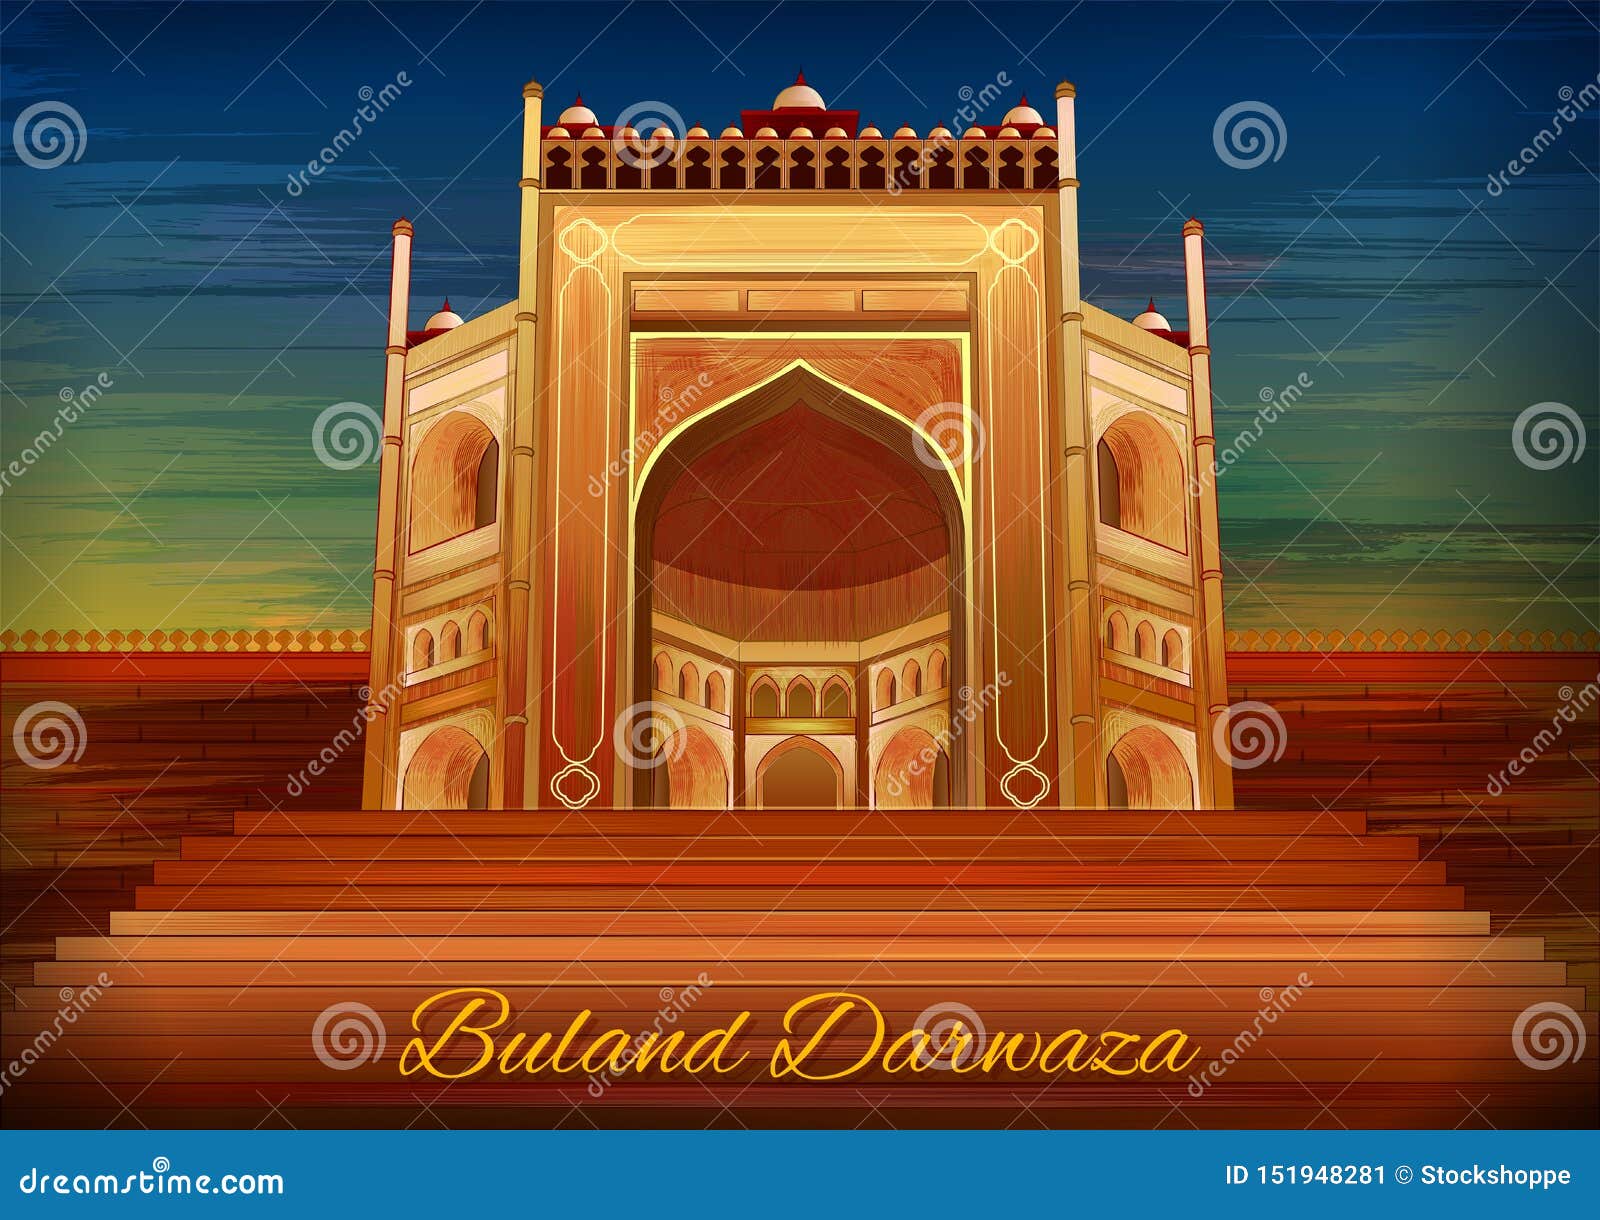 Drawing Buland Darwaza(बुलन्द दरवाज़ा ) l LearnByArt - YouTube